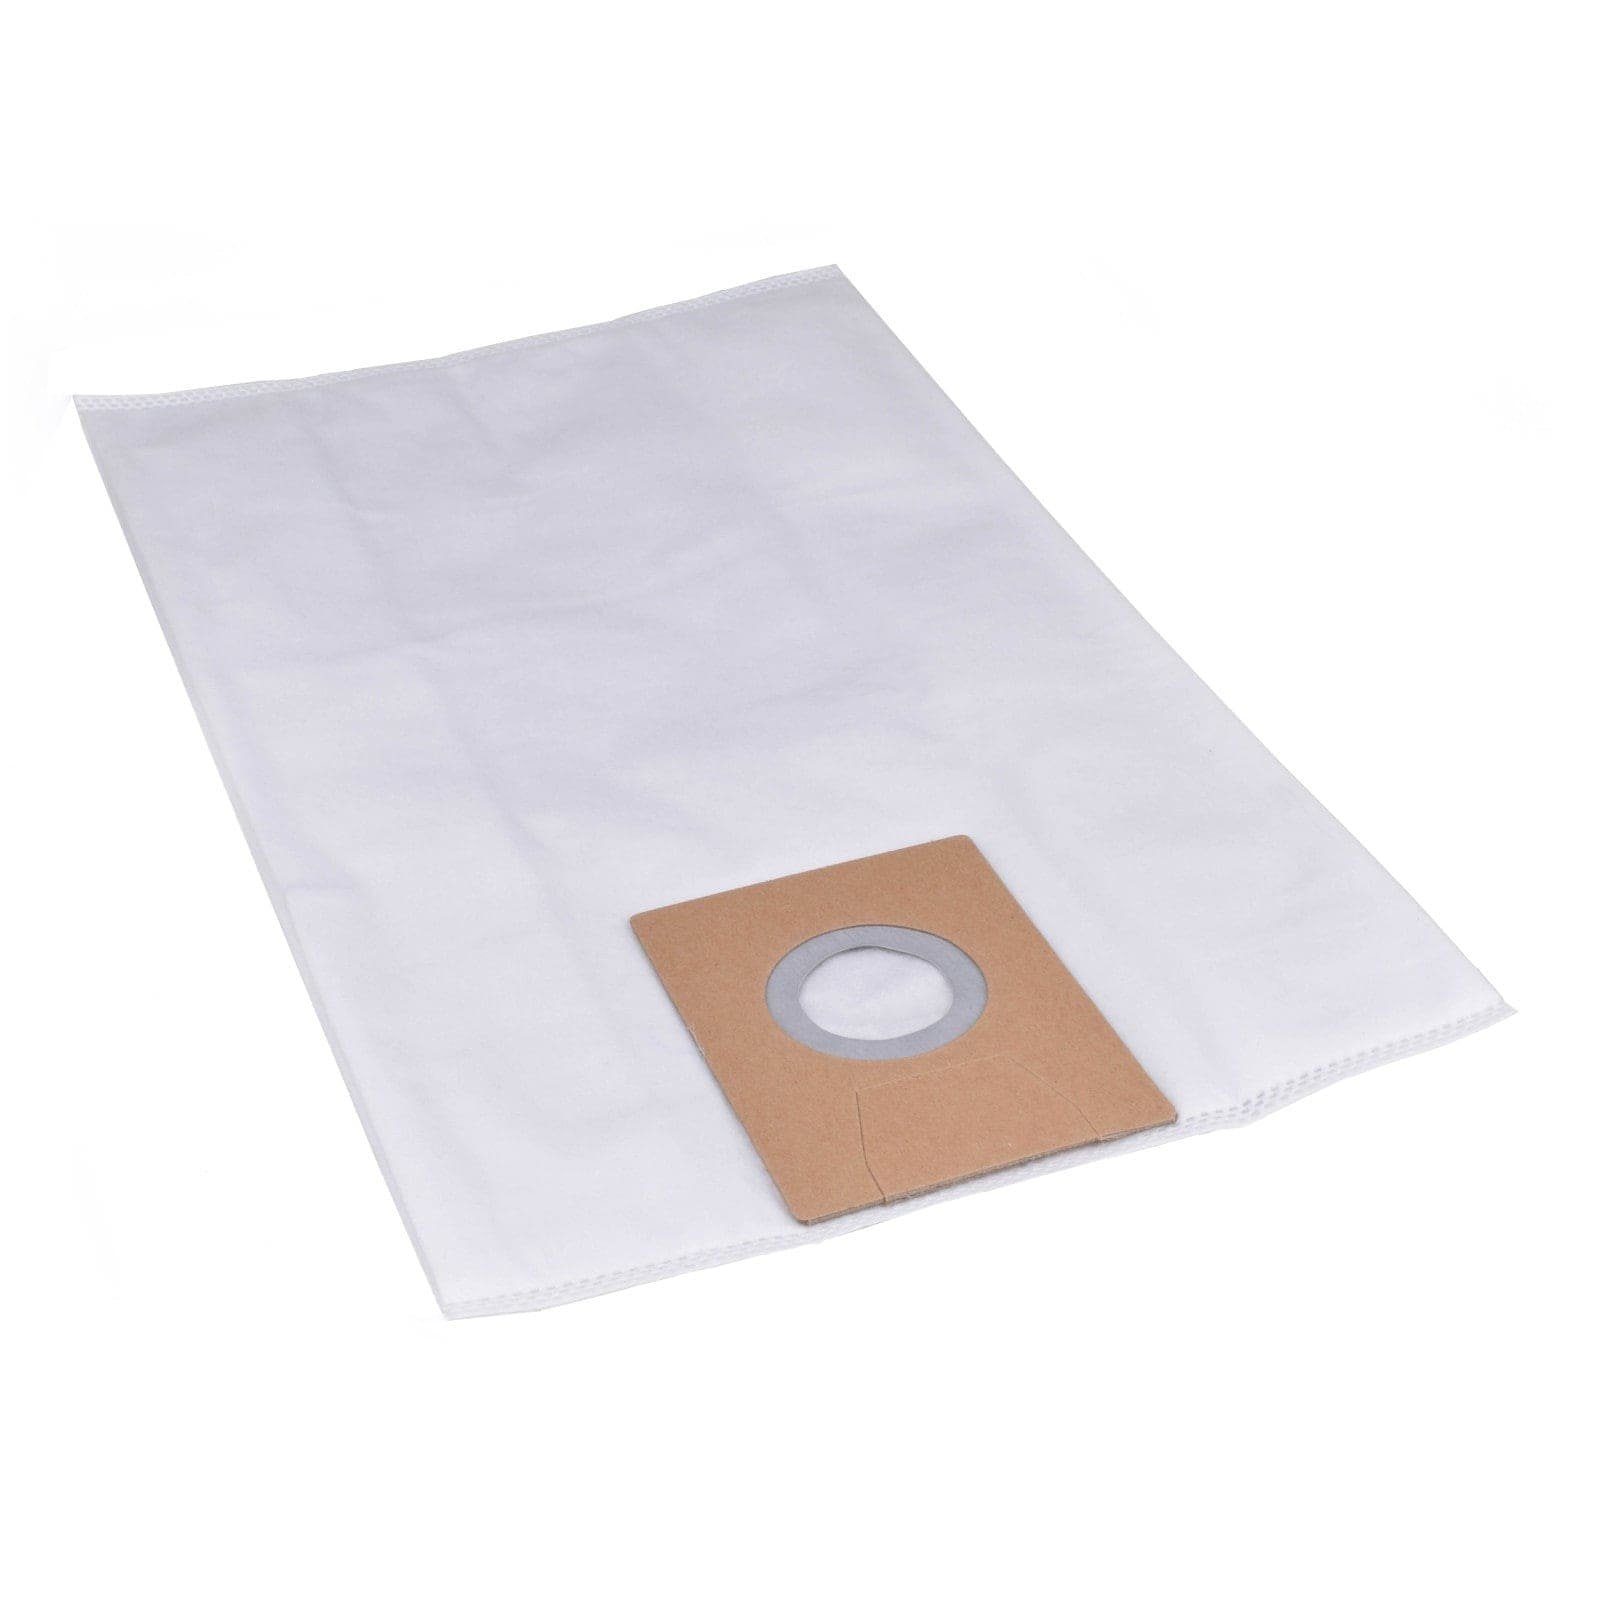 Reinica Staubsaugerbeutel passend für Clean a la Card K103200942, 10er-Pack Staubbeutel Saugerbeutel Beutel Filtertüten